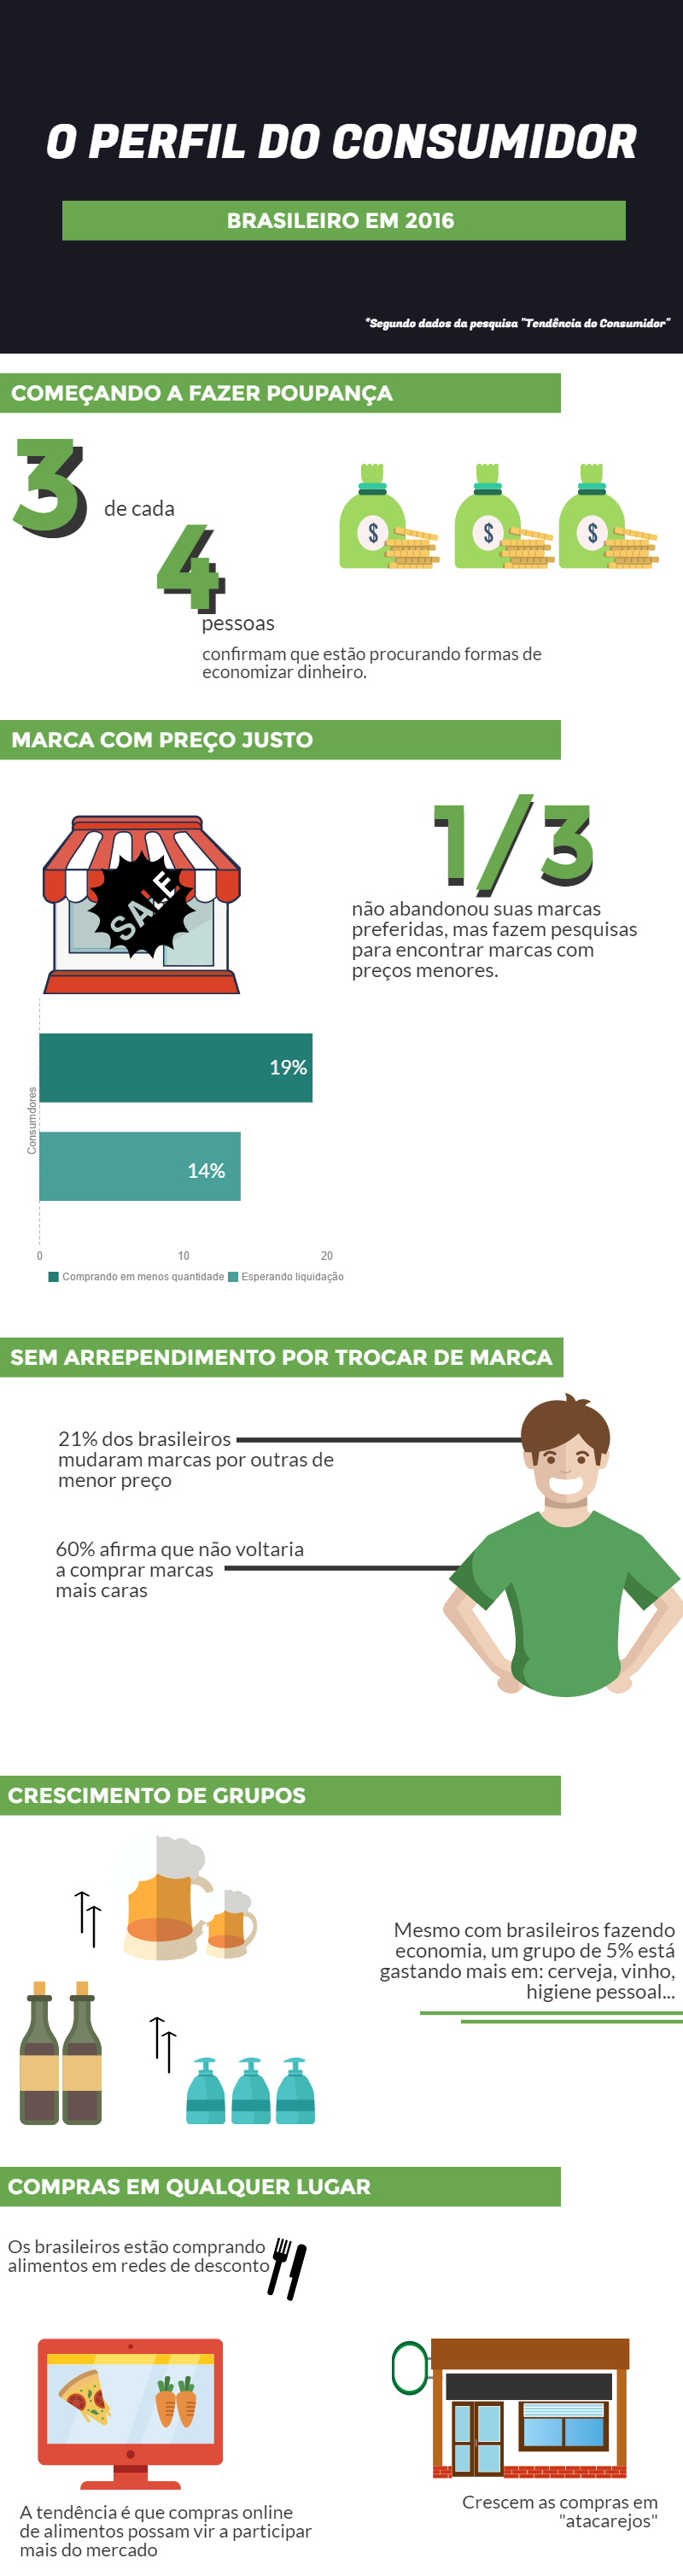 o-perfil-do-consumidor-brasileiro-em-2016